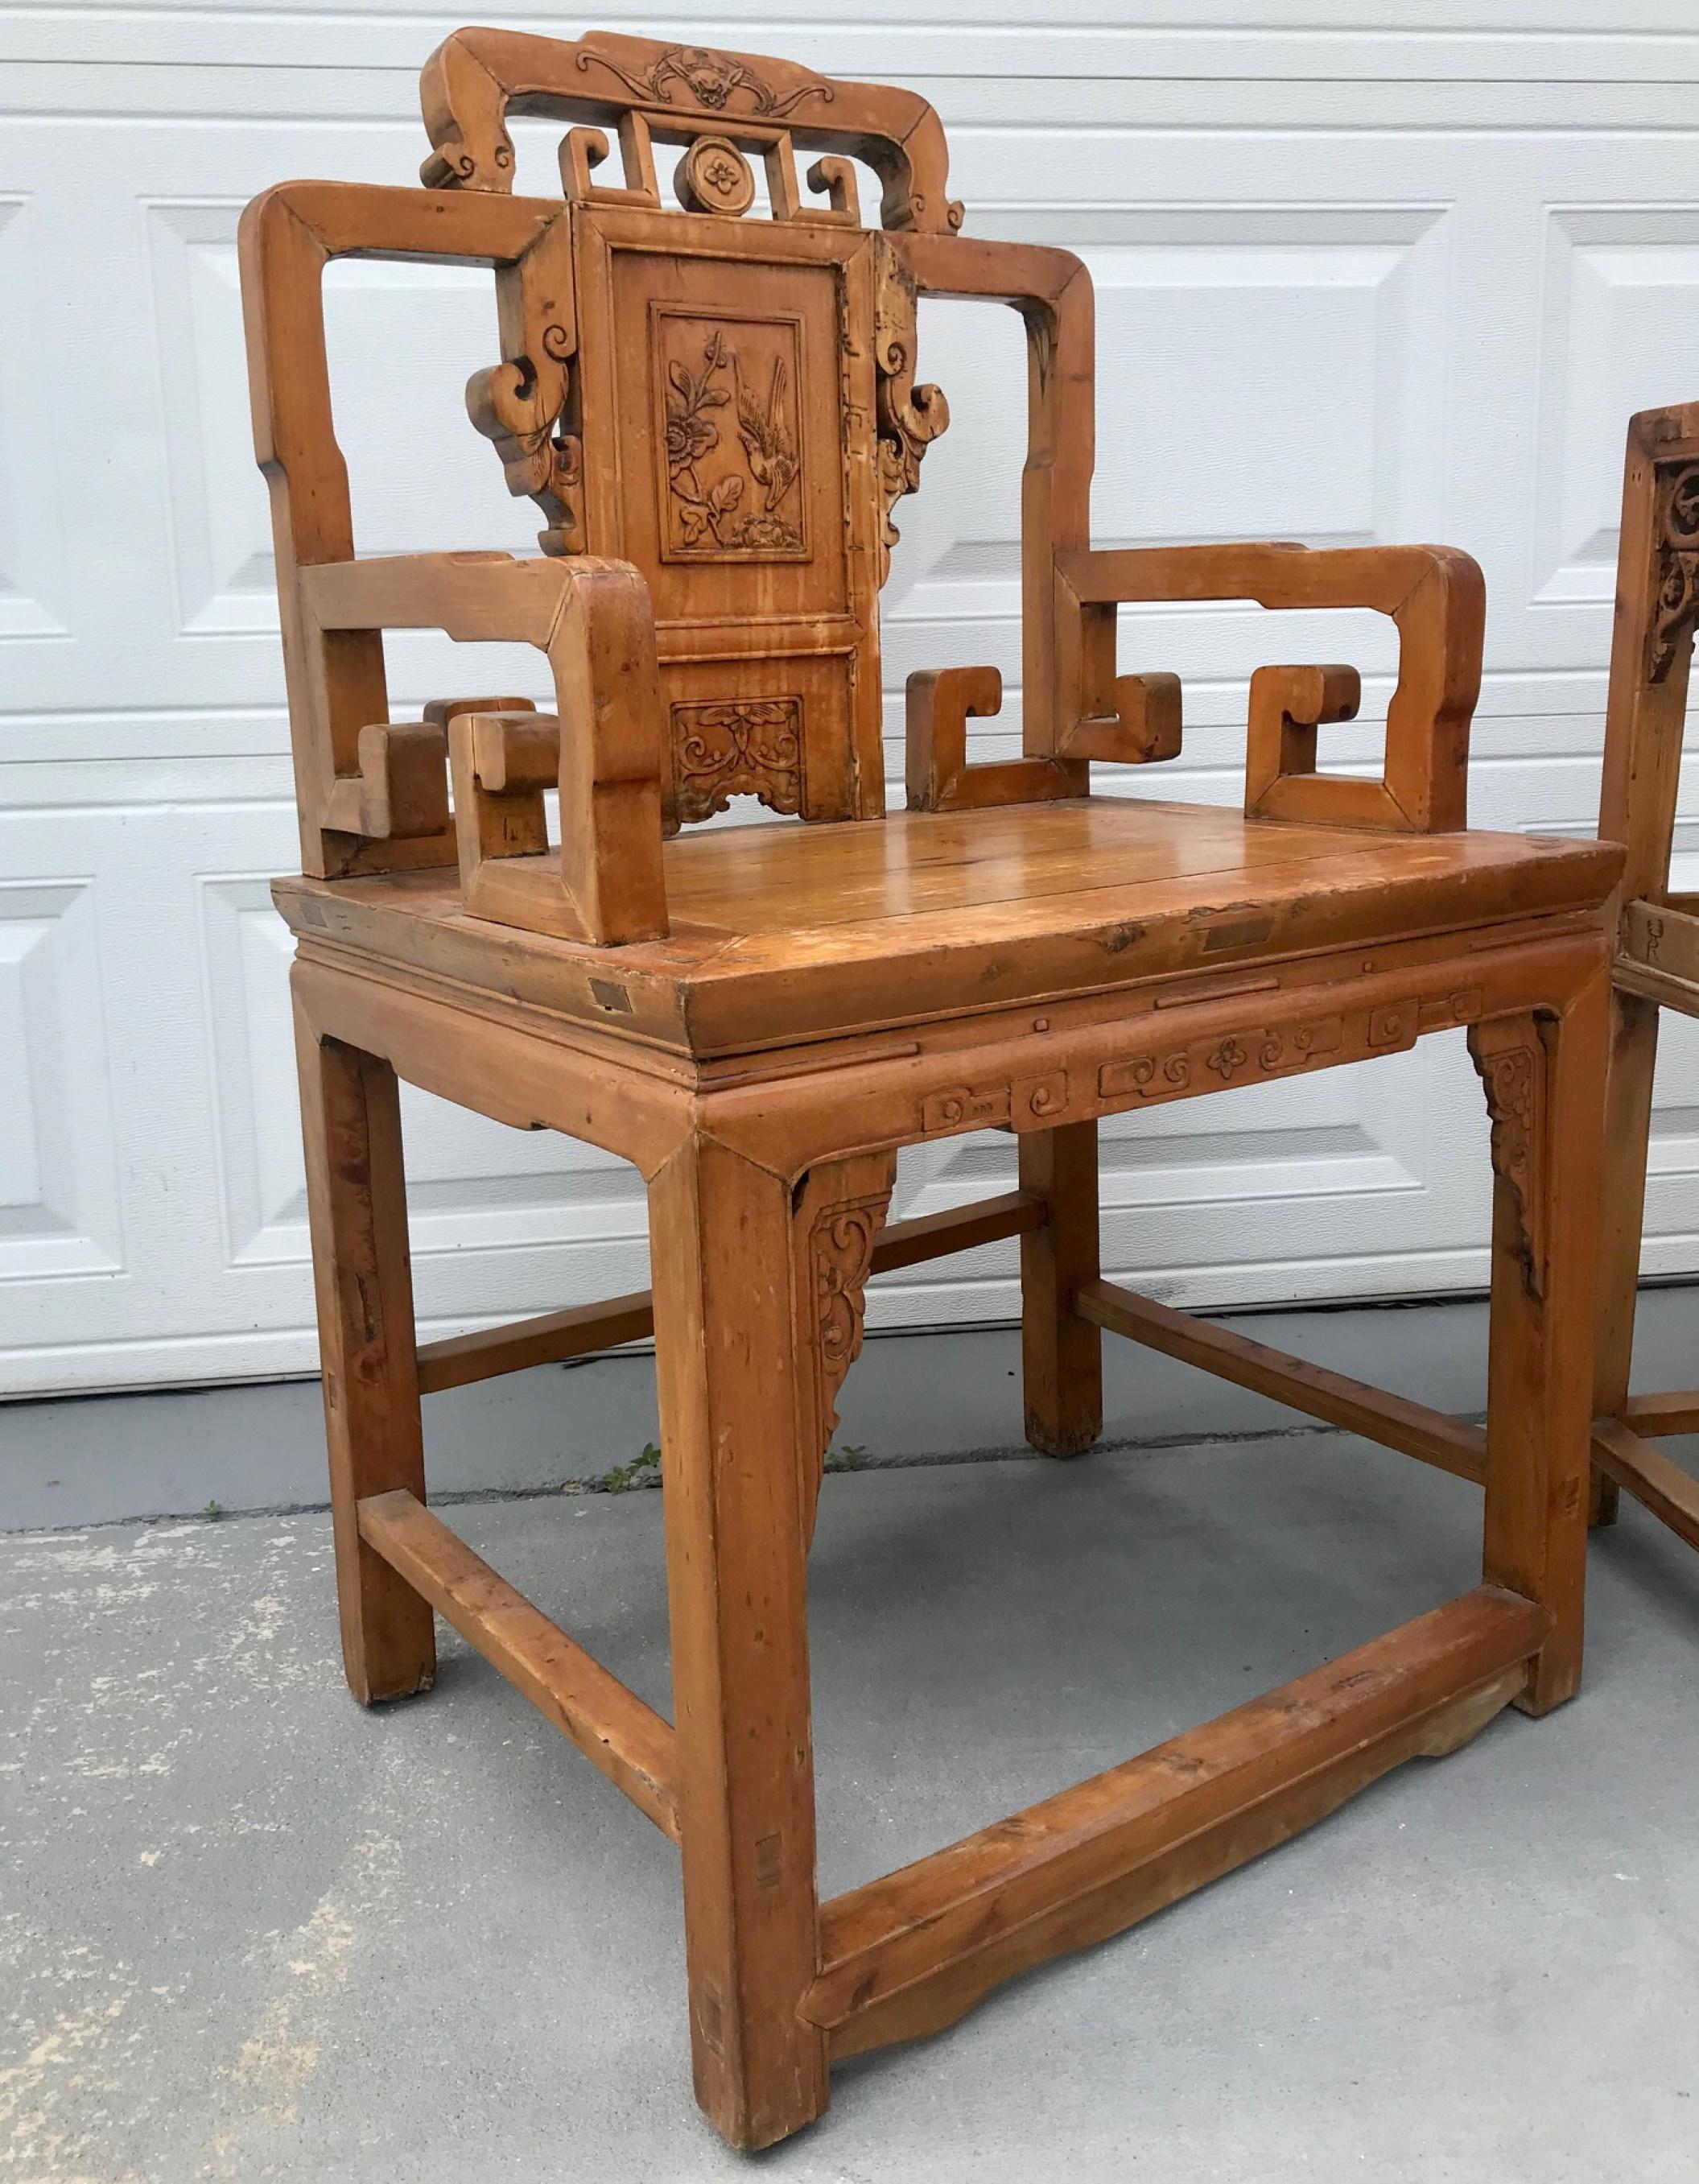 3-teiliges Set aus Sesseln und Tisch aus der Qing-Dynastie.

Diese authentischen antiken chinesischen handgeschnitzten Sessel sind Meisterwerke der Qing-Dynastie. Die Stühle sind mit einem archaischen Schlüsselmotiv versehen. Sie sind elegant und